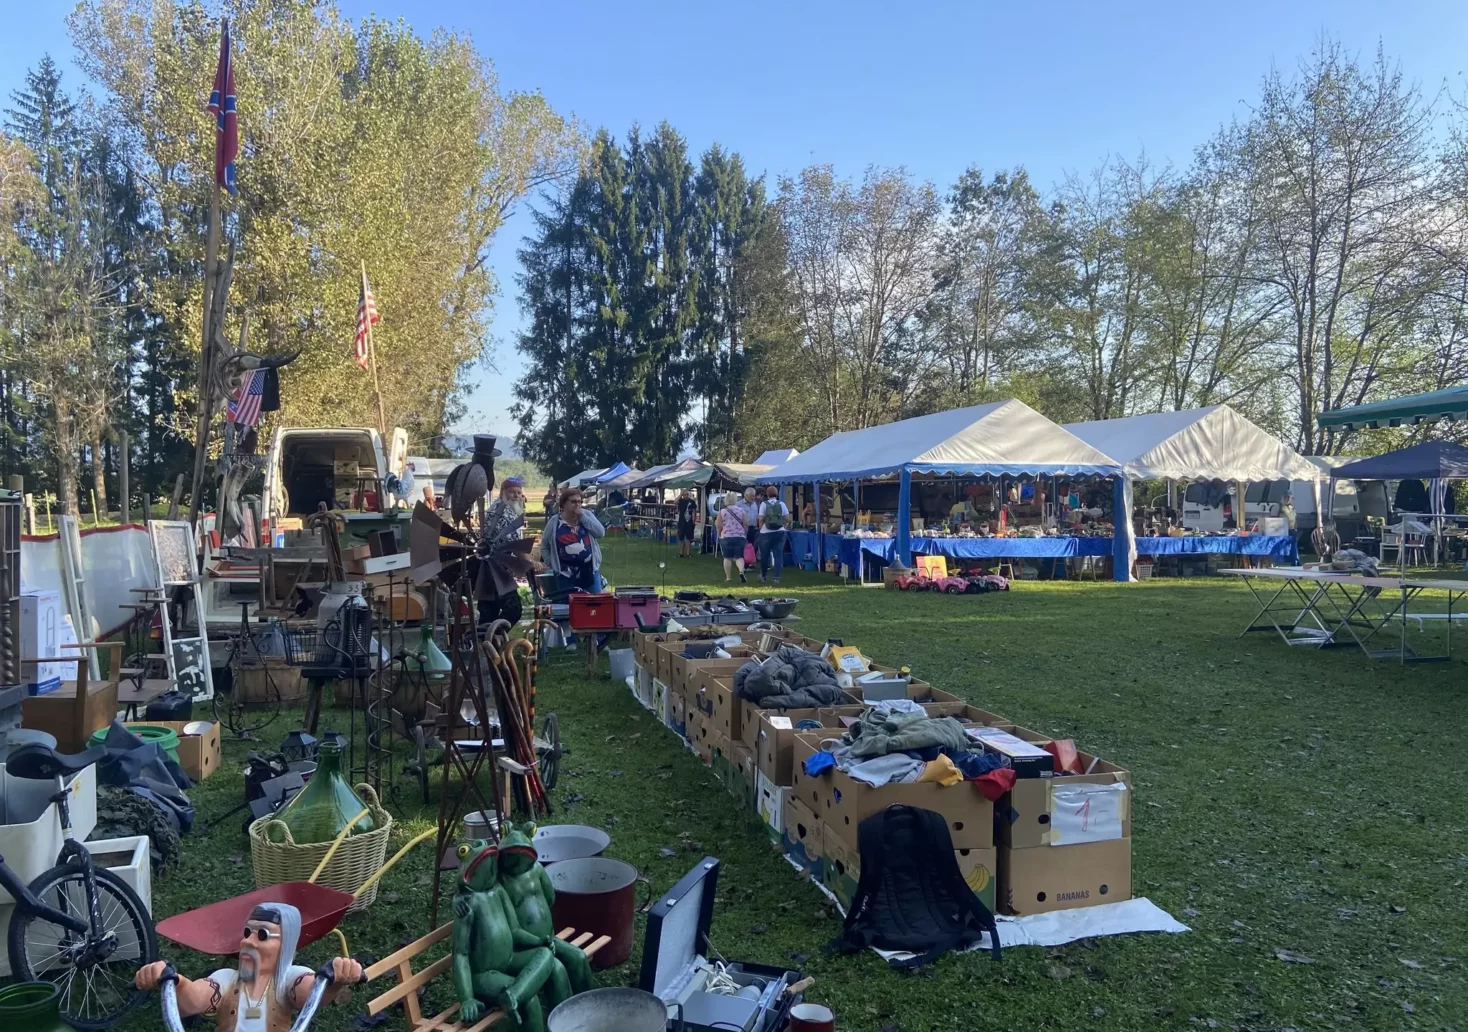 Foto in Beitrag von 5min.at: Zu sehen ist der Großflohmarkt in Viktring inklusive einiger Aussteller und Waren.